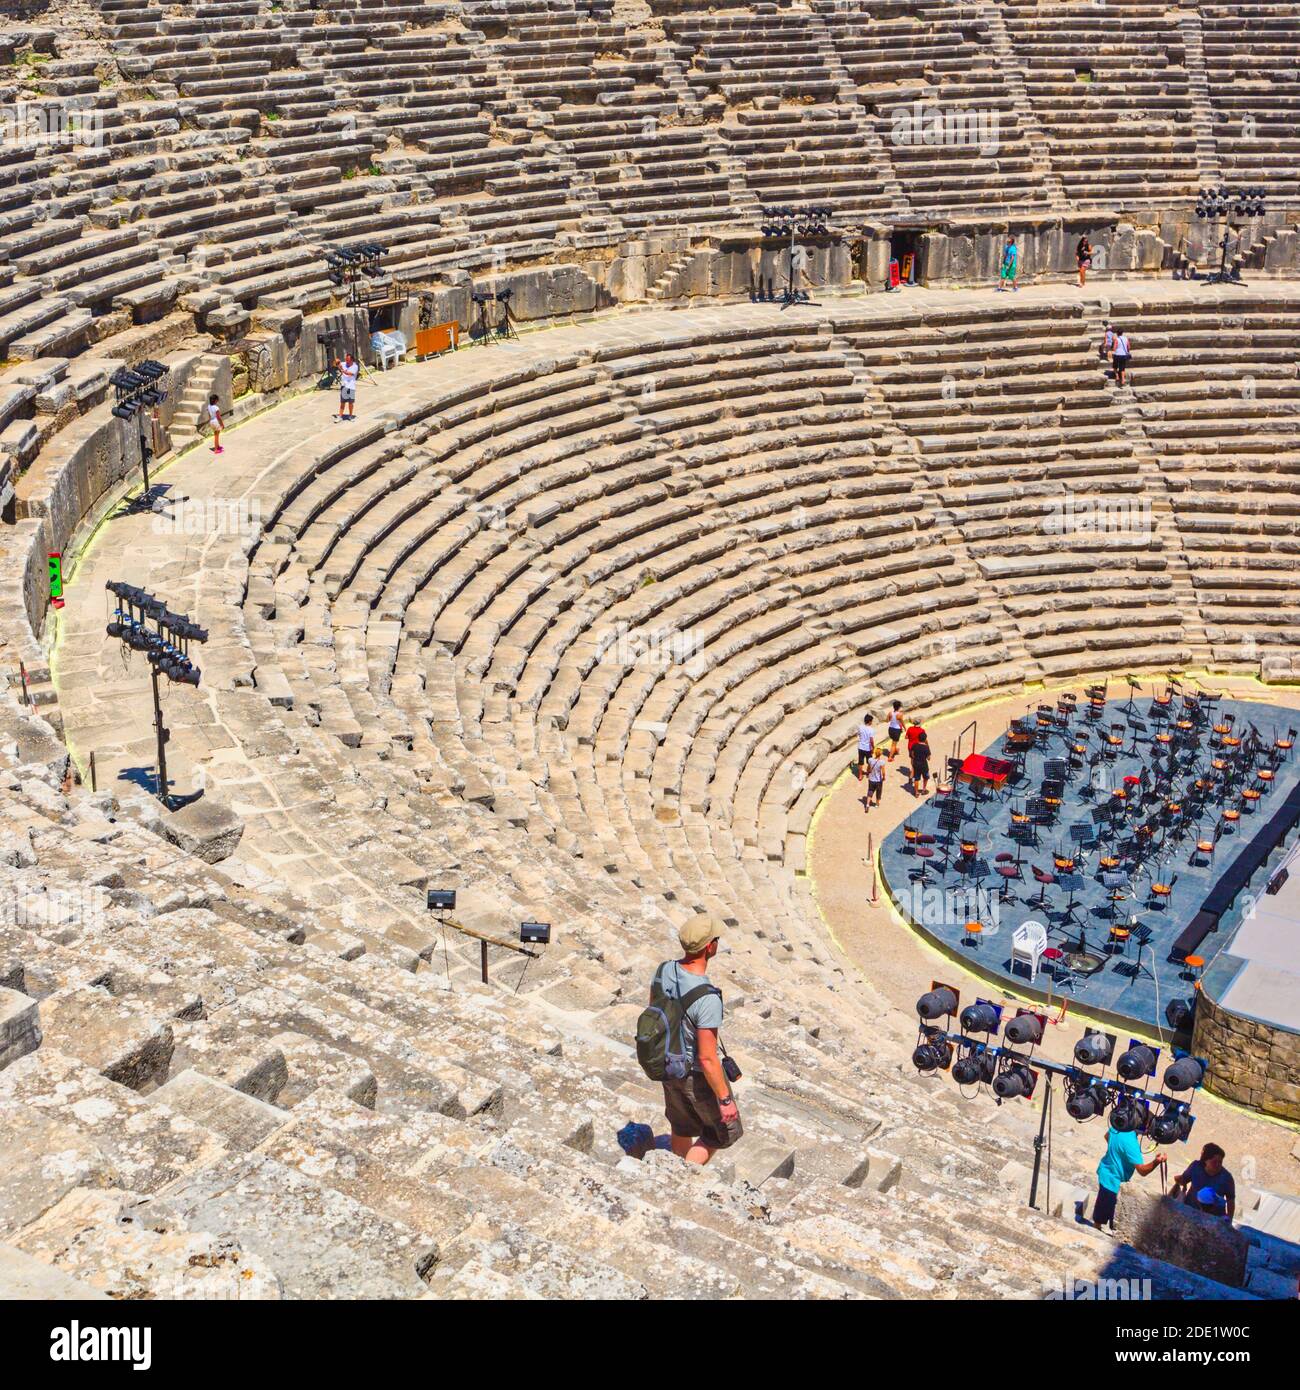 Aspendos, Provincia di Antalaya, Turchia. Il teatro romano, costruito nel 160 d.C. dall'architetto greco Zeno. Può alloggiare 12,000 ed è ancora in uso t Foto Stock